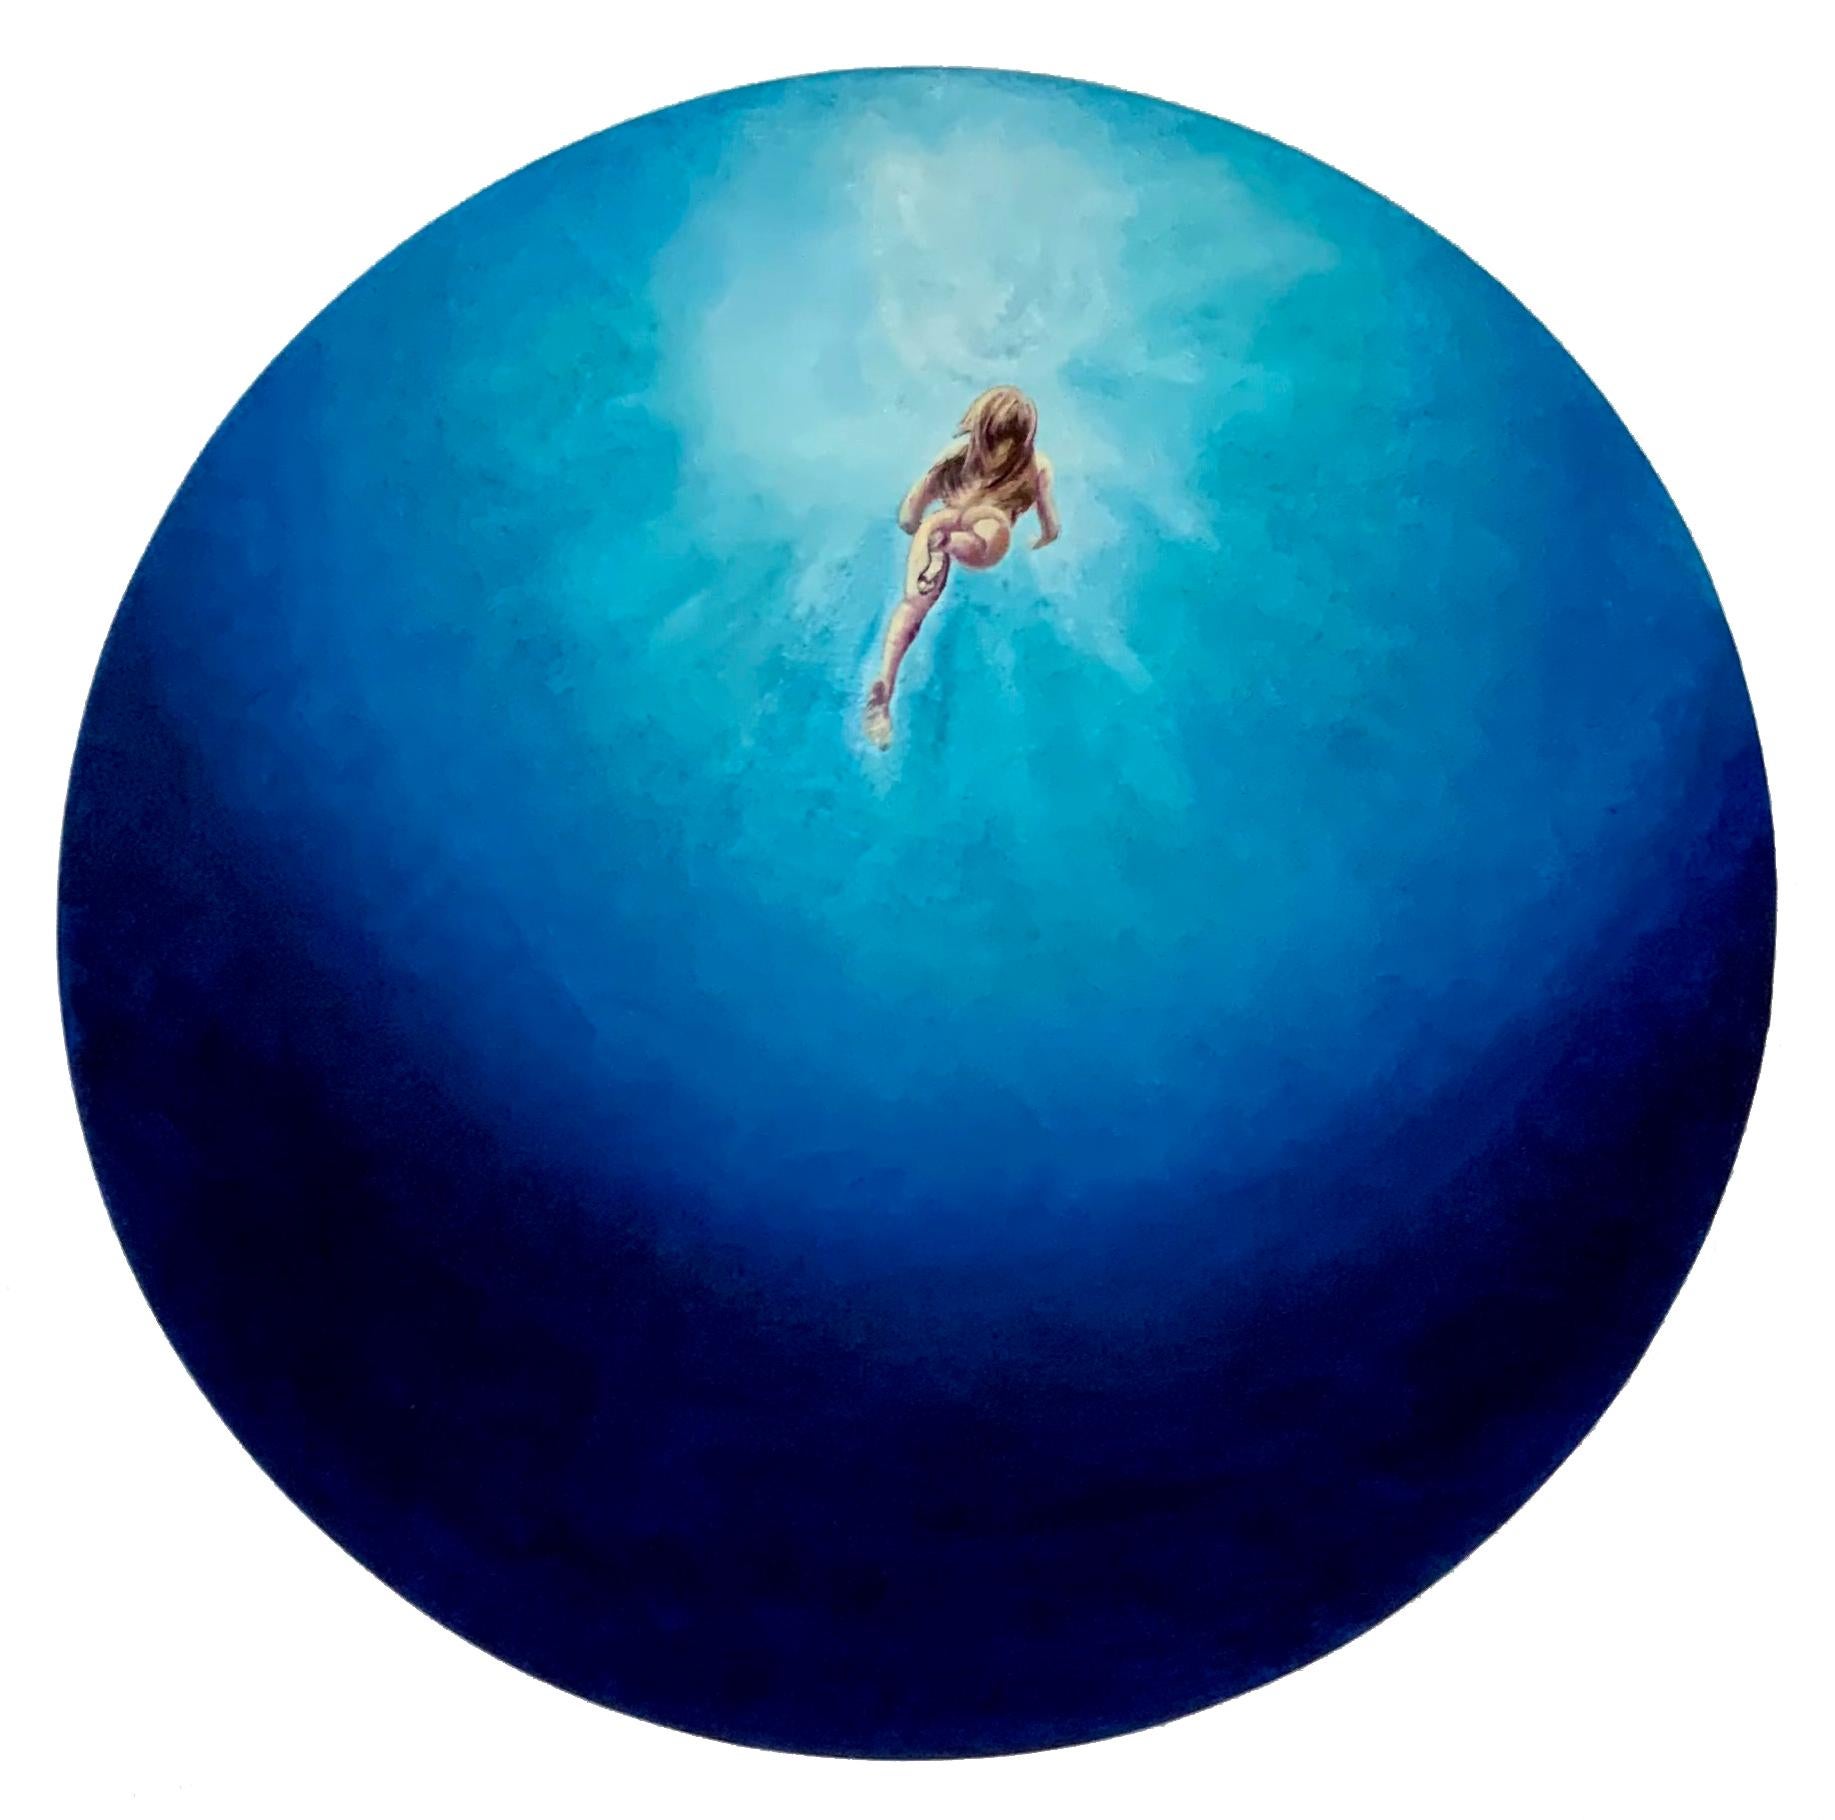 Landscape Painting Anastasia Gklava - « Bleu velours », tons bleus vifs, peinture circulaire d'eau de mer avec nageoir nu